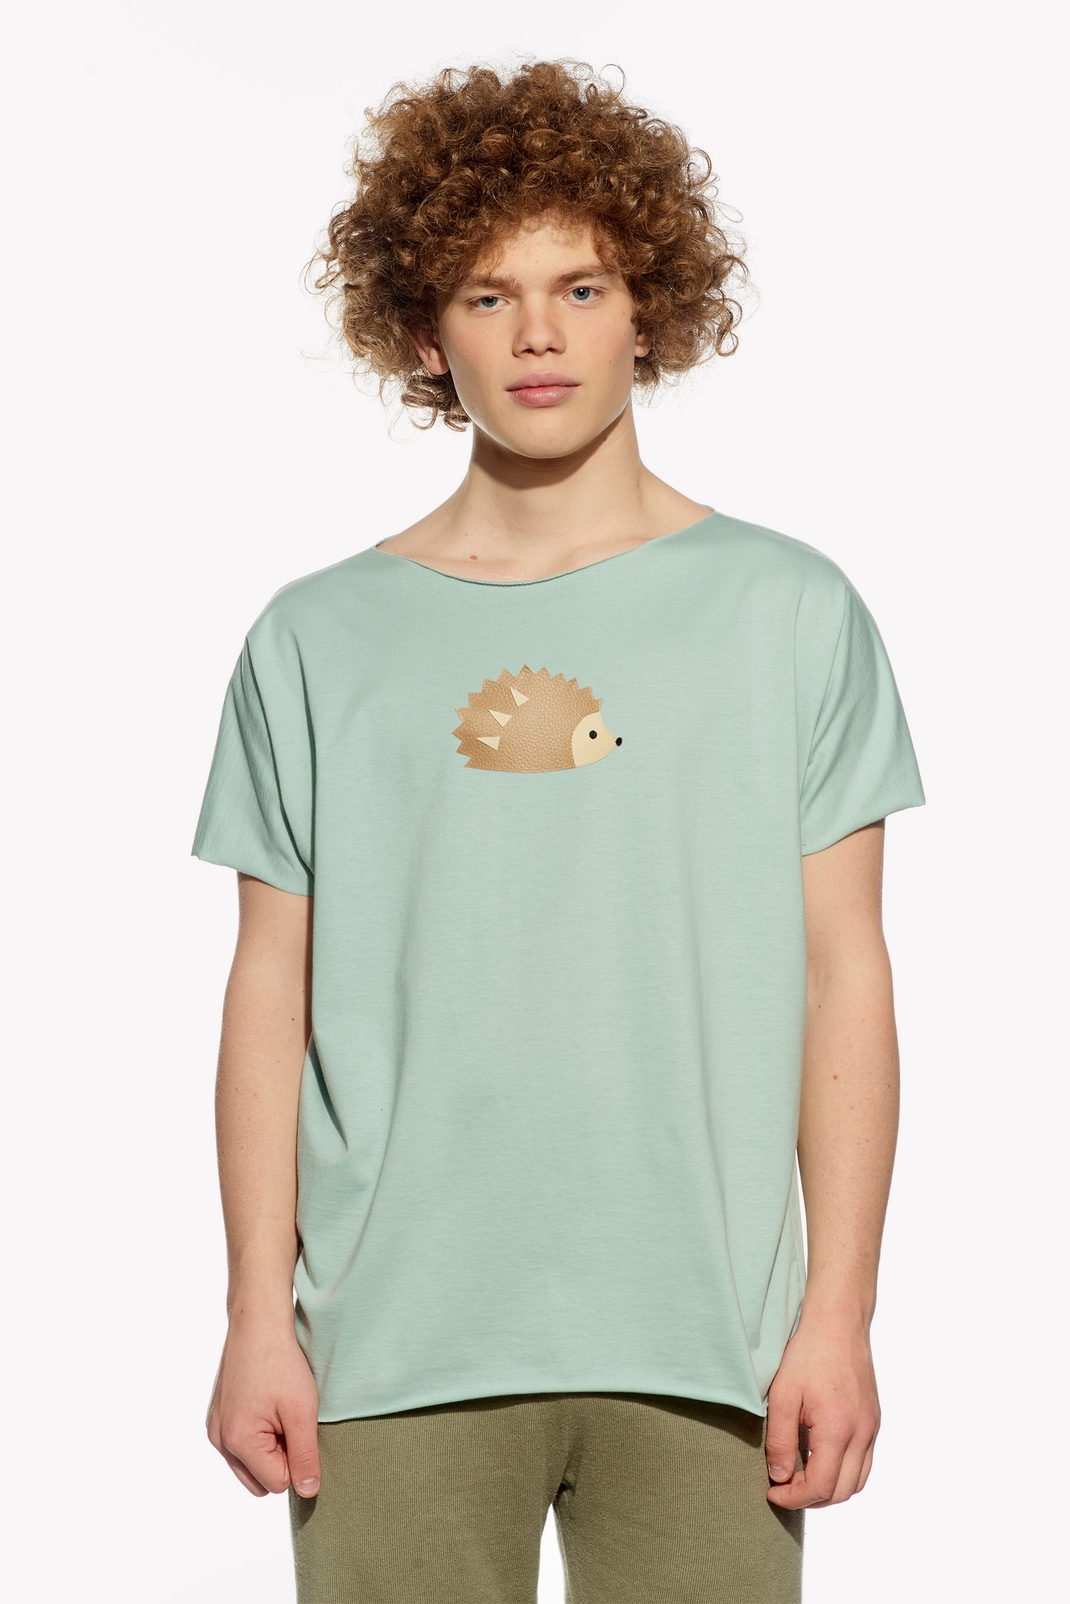 Tričko s ježkem